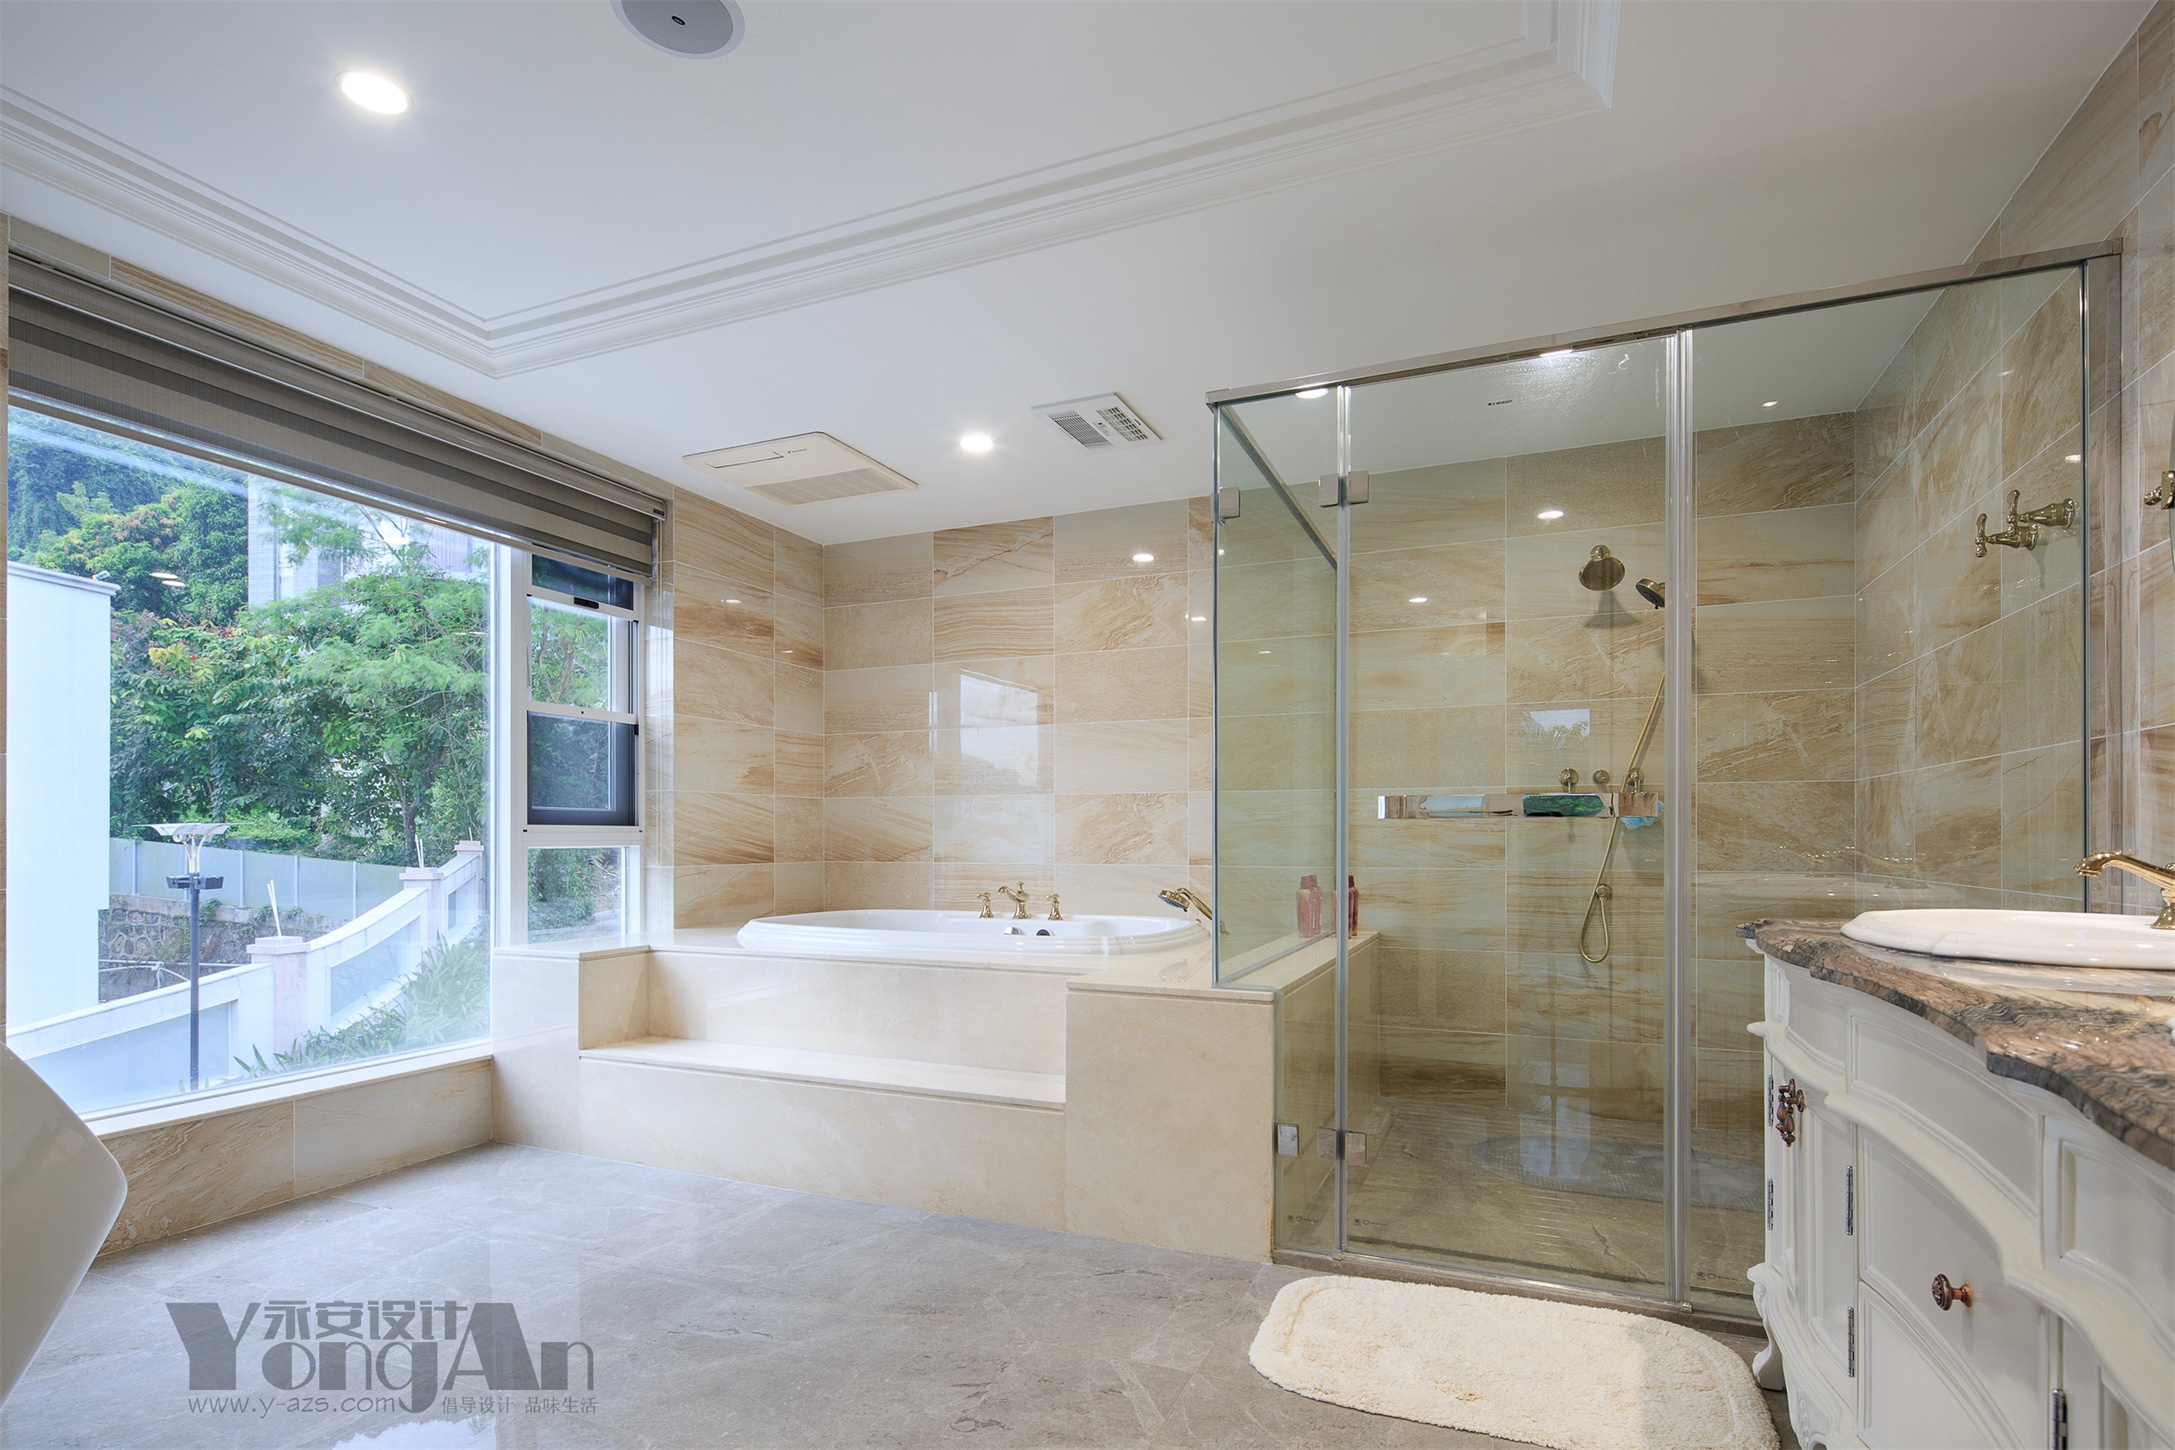 别墅 美式 永安设计 别墅设计 深圳设计 云深处 主卫 卫生间 浴室图片